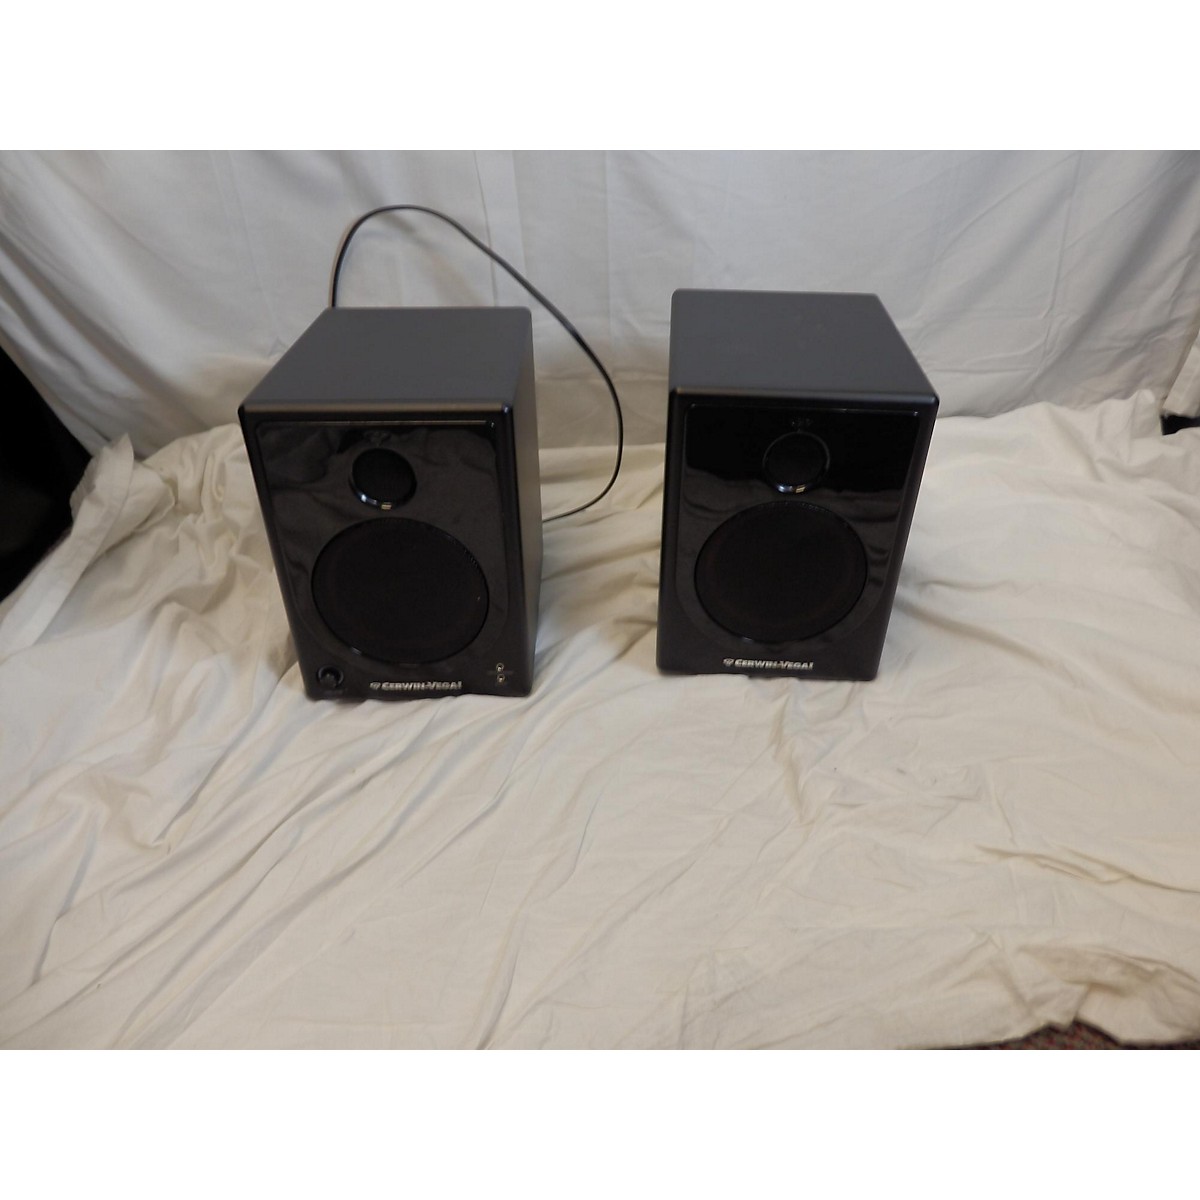 used cerwin vega speakers